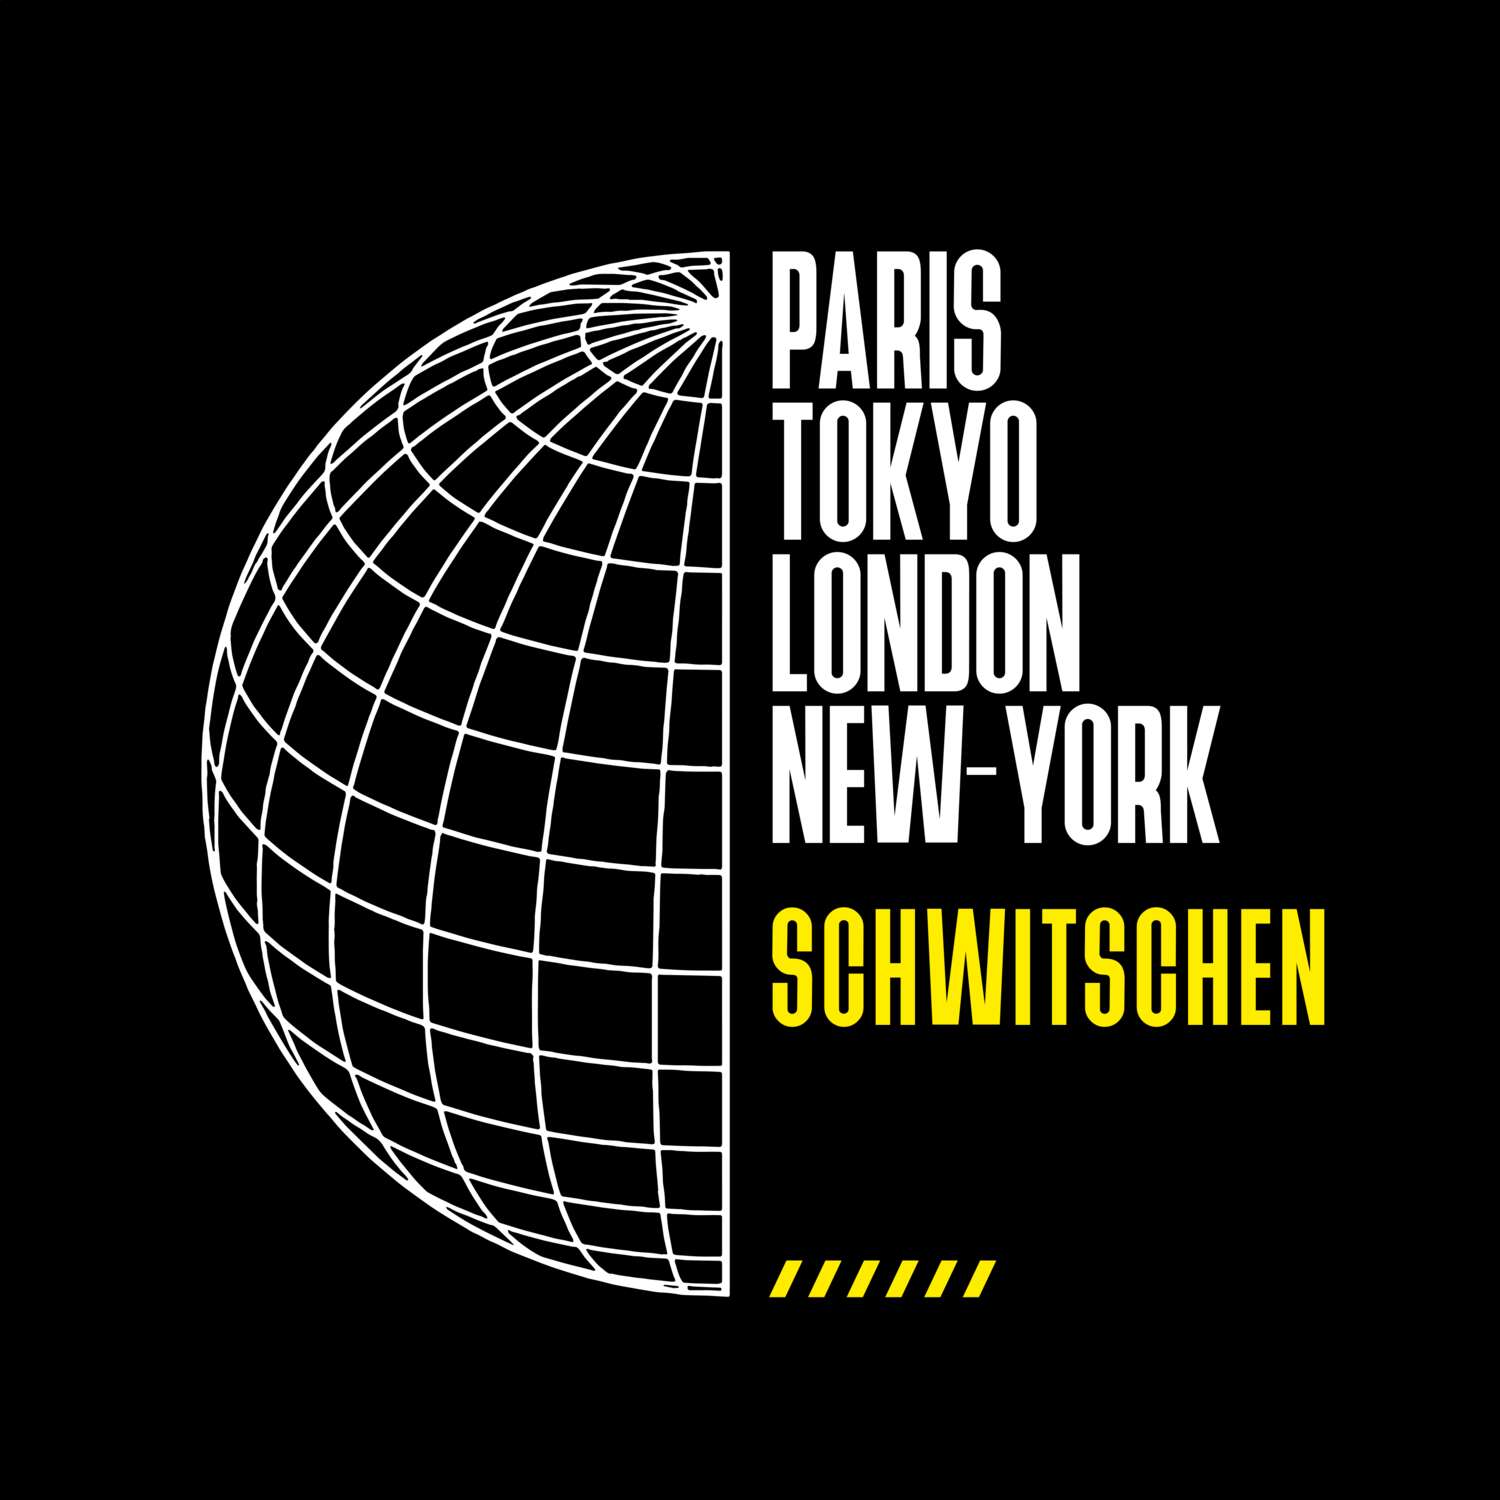 Schwitschen T-Shirt »Paris Tokyo London«